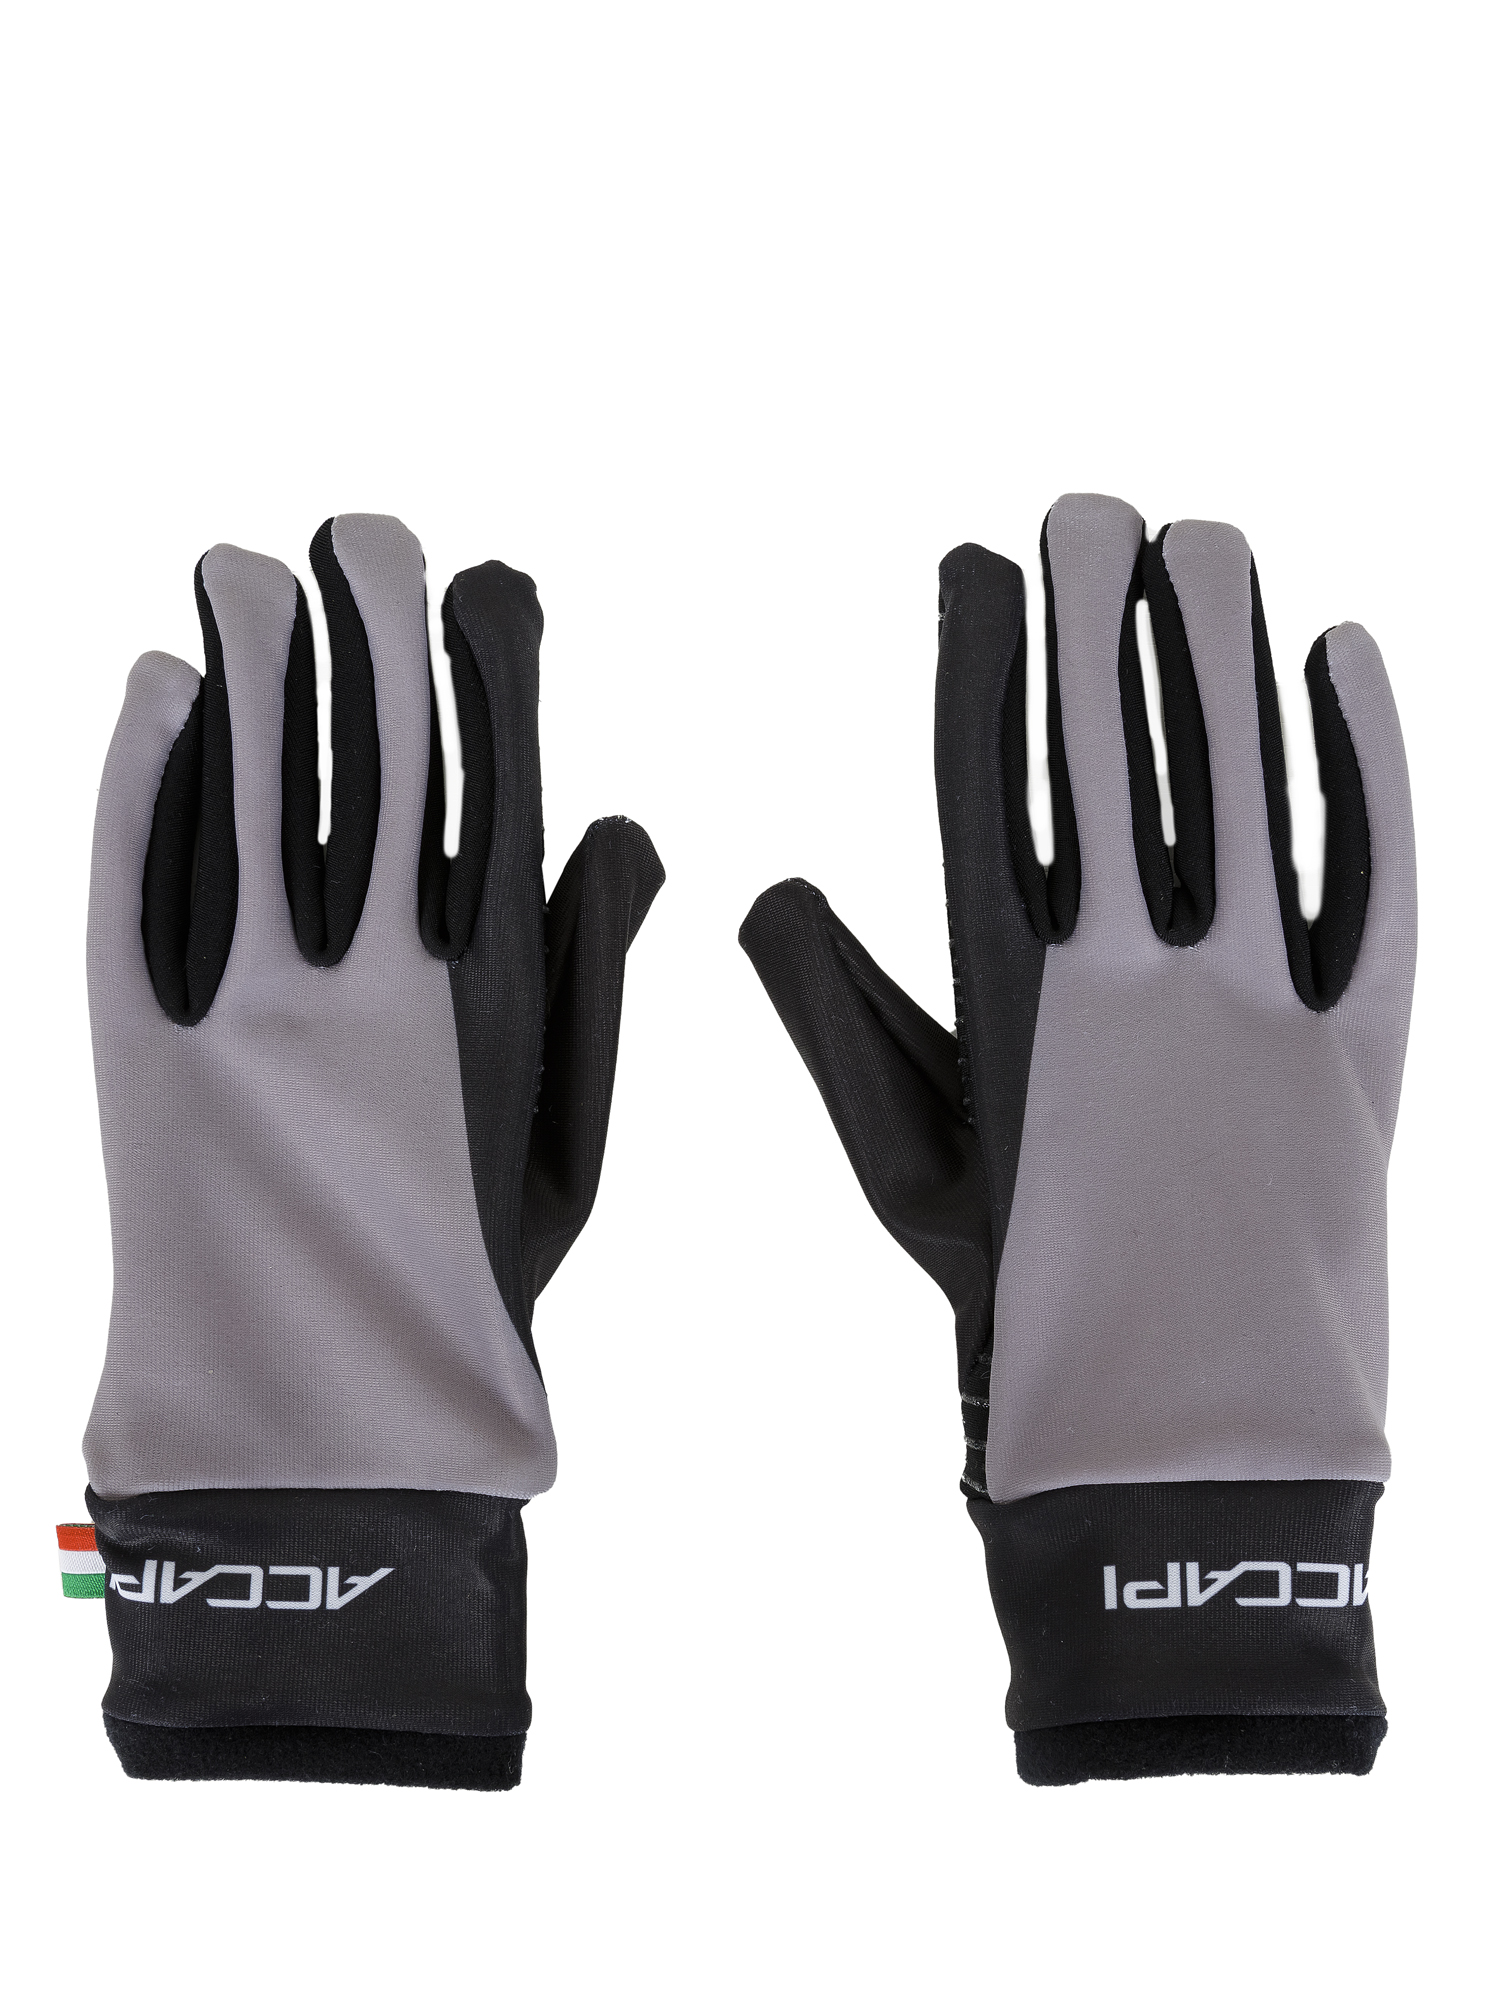 Перчатки Велосипедные Accapi Cycling Gloves Jr - Pistol Anthracite/Gray, S